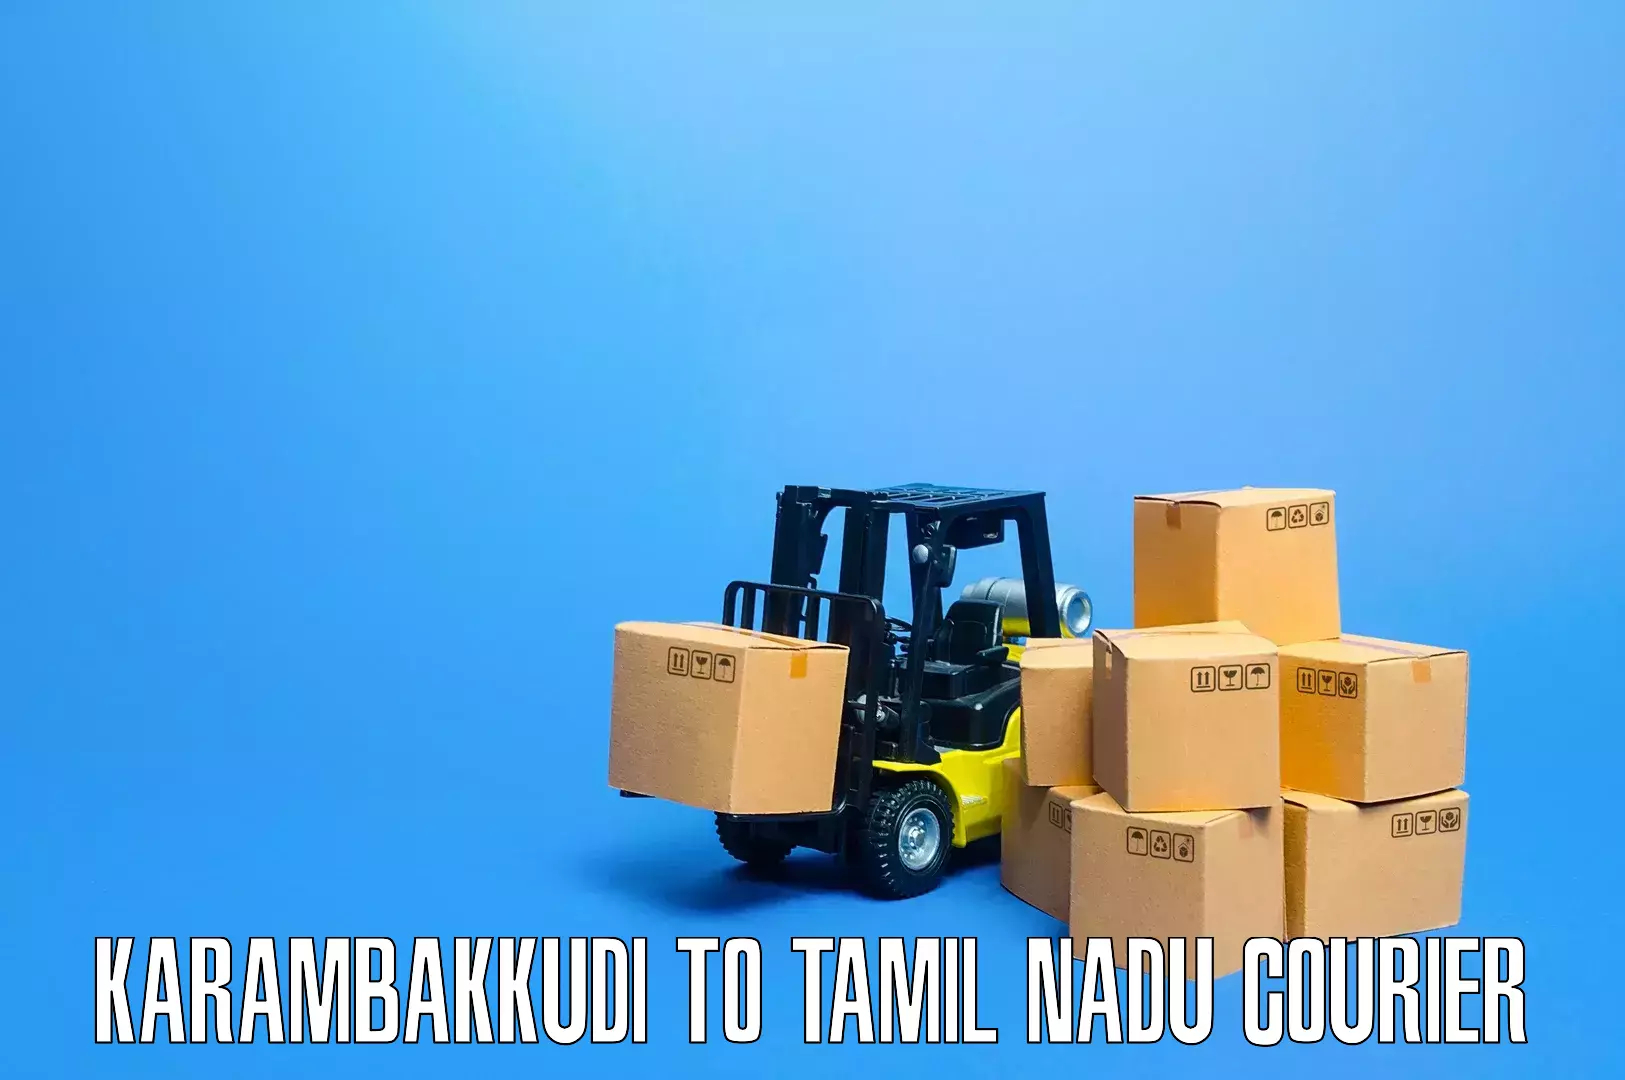 Skilled furniture movers Karambakkudi to Kagithapuram